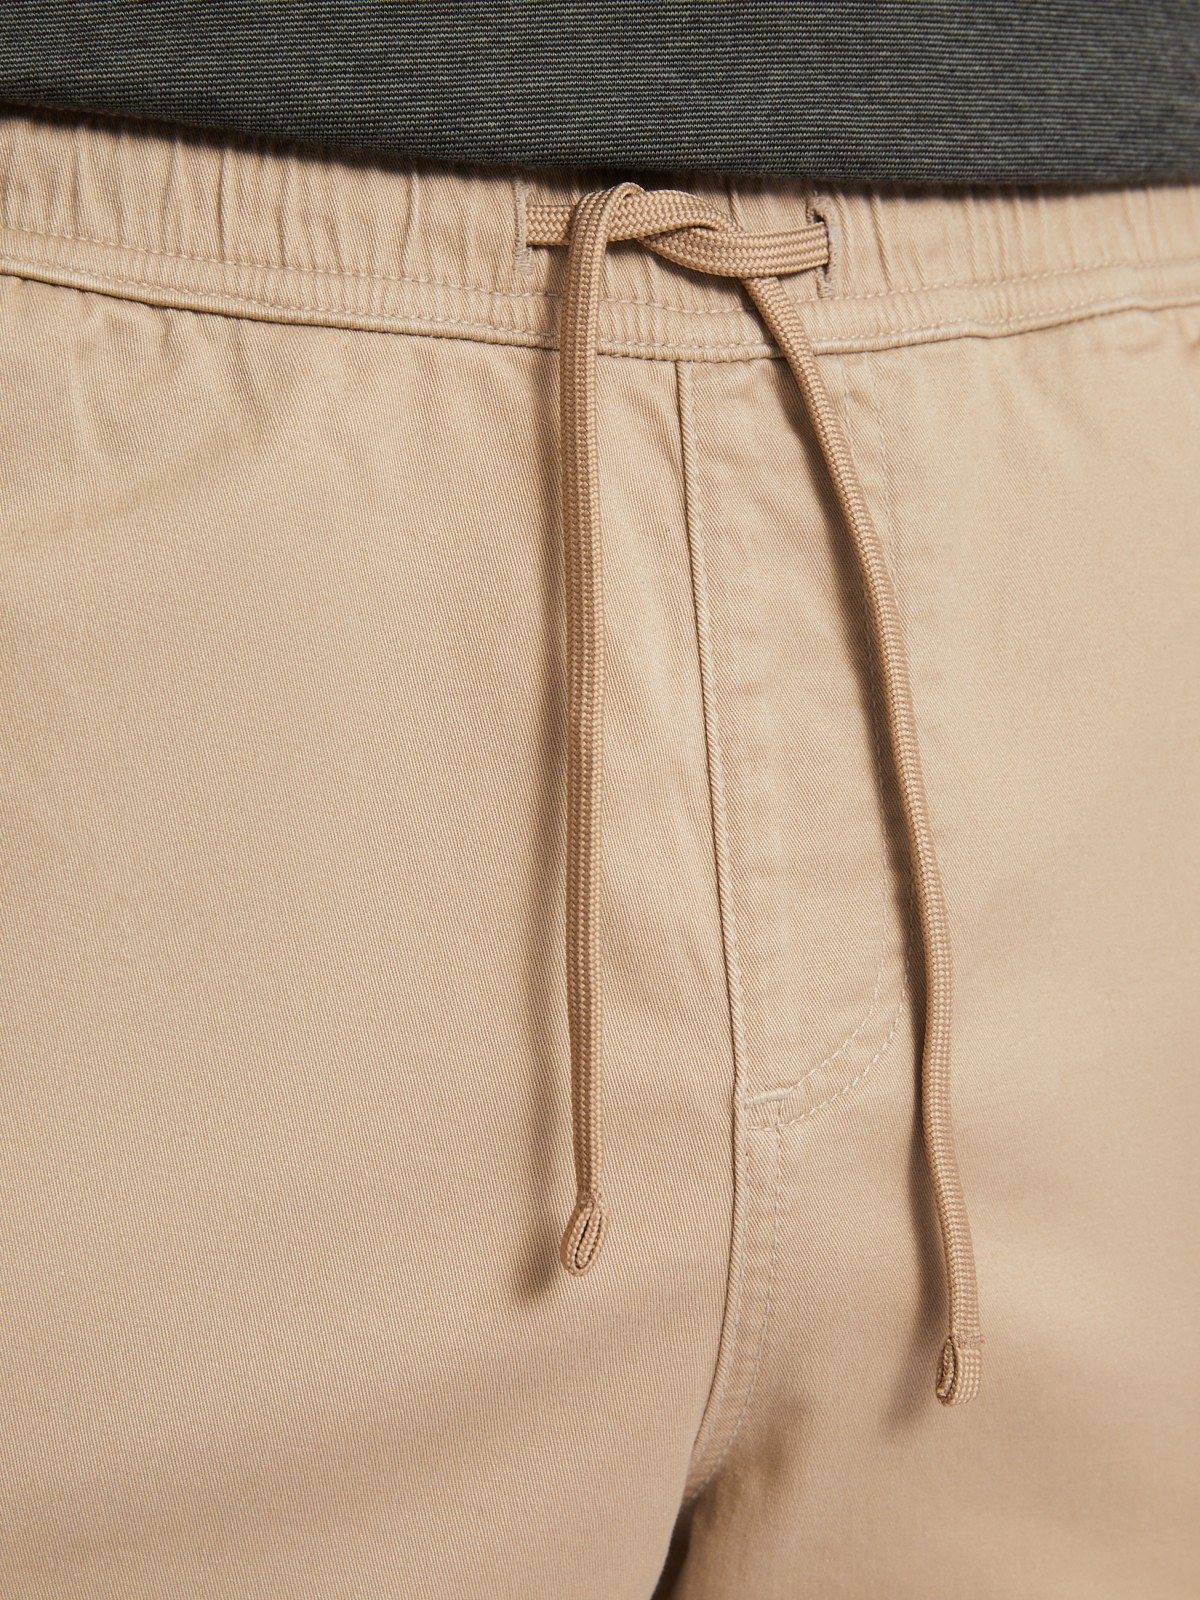 Прямые брюки-джоггеры из хлопка на резинке zolla N1421730L012, цвет бежевый, размер 34 - фото 4